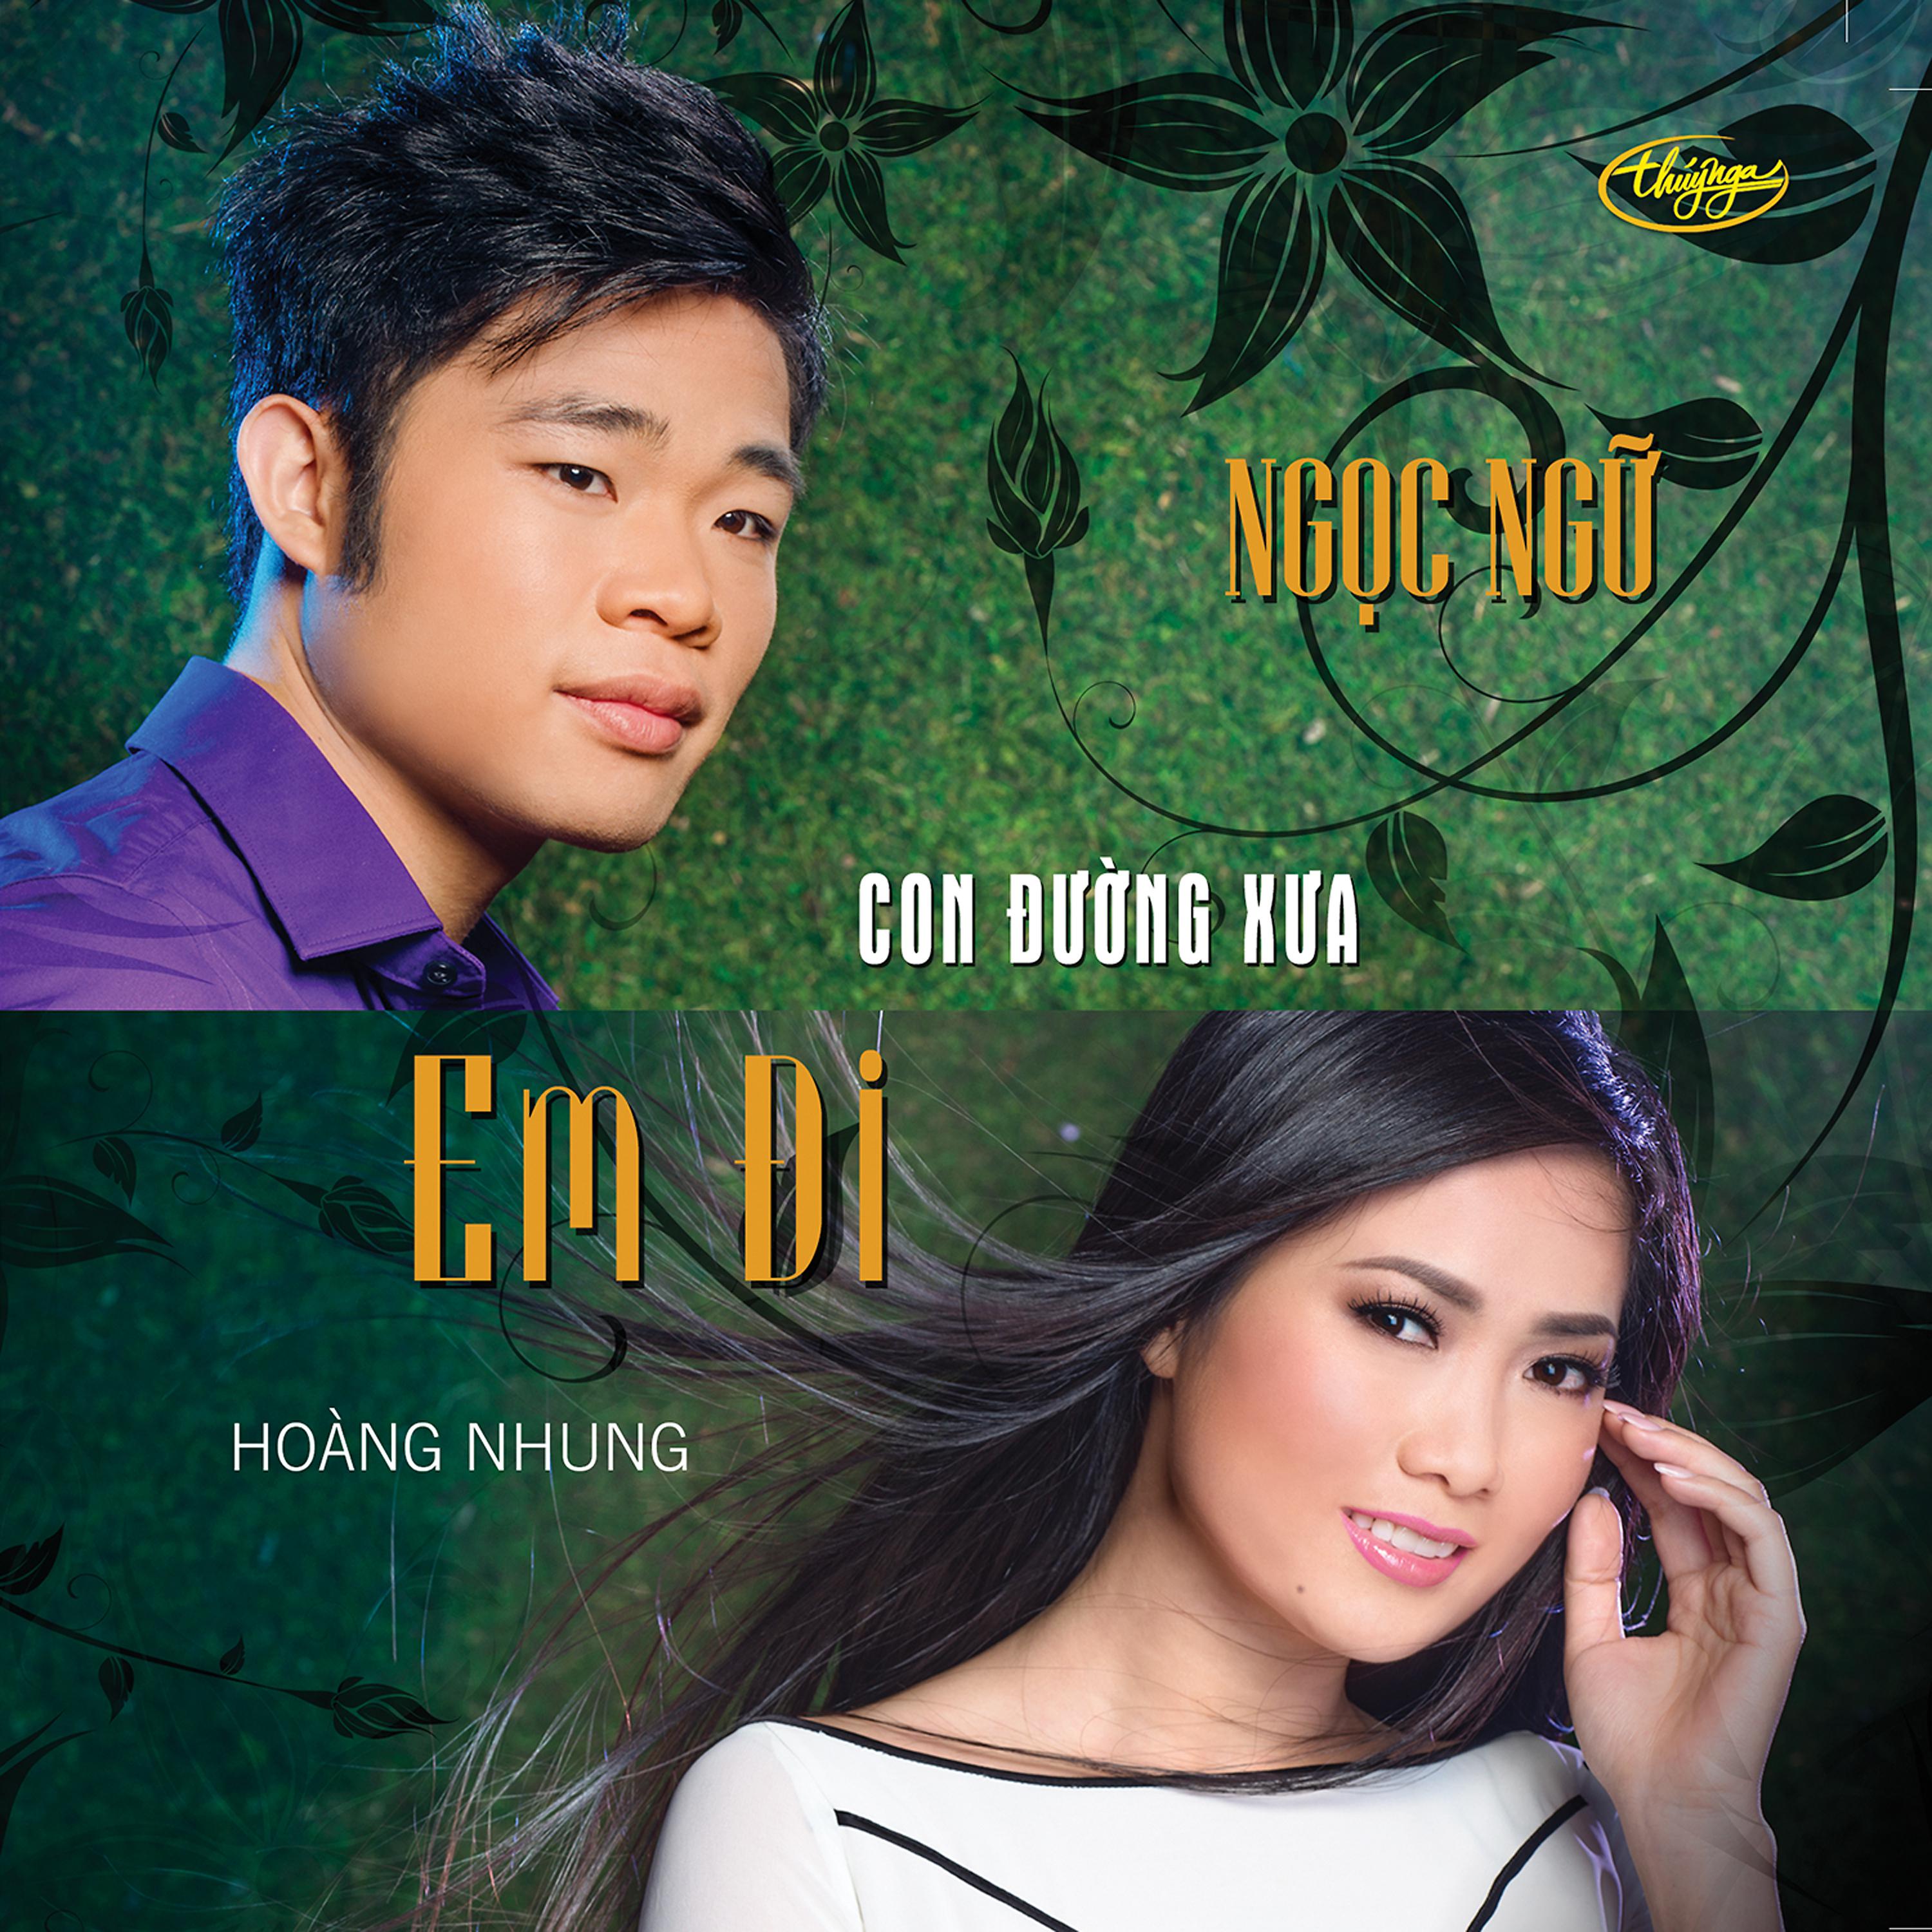 Постер альбома Con Đường Xưa Em Đi